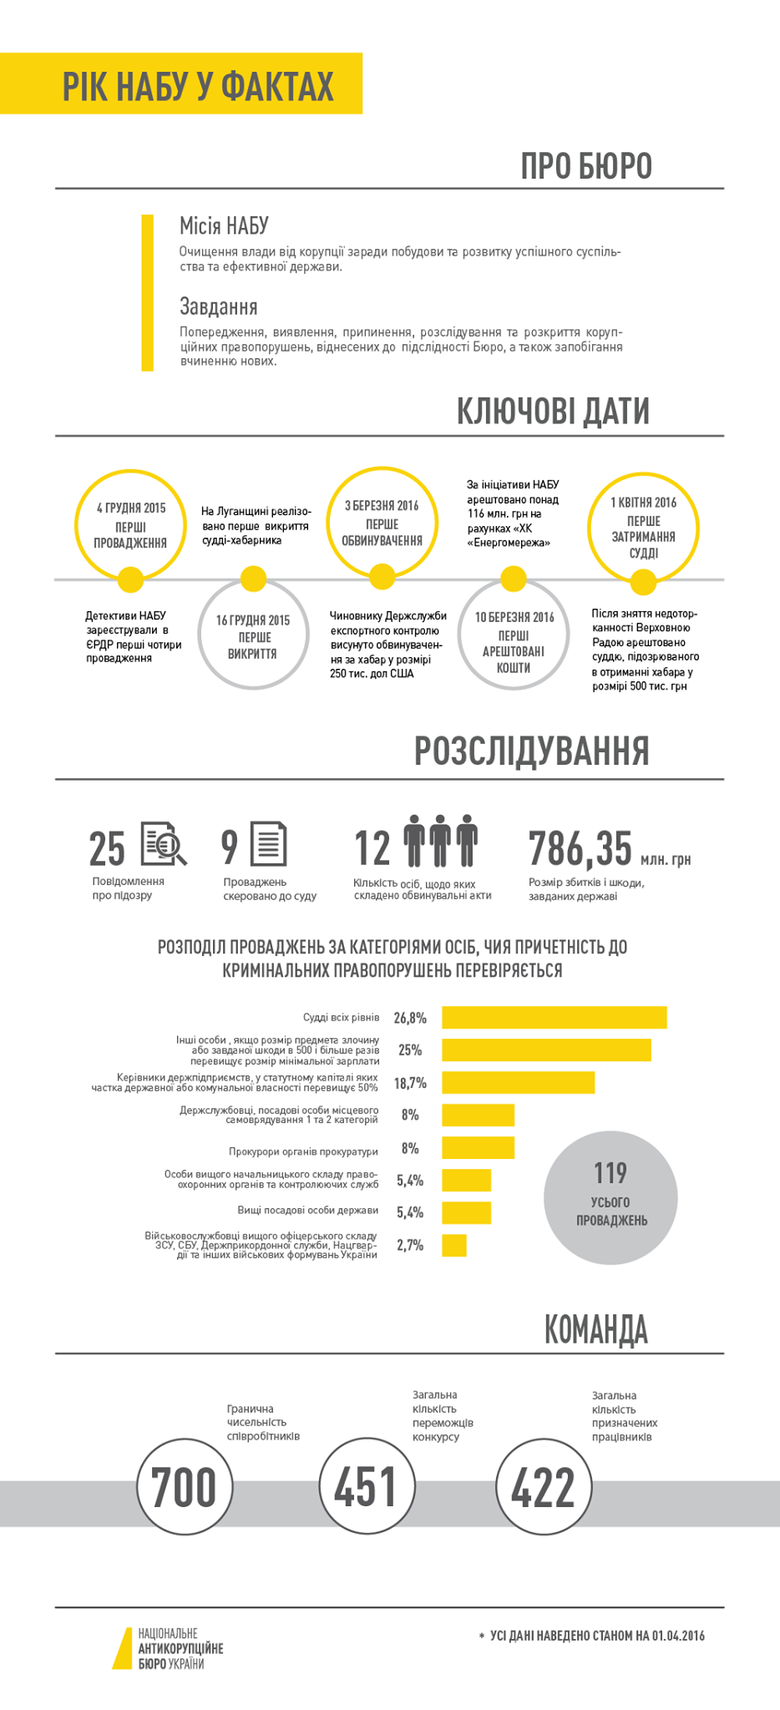 Национальное антикоррупционное бюро Украины по состоянию на 1 апреля 2016 года возбудило 119 уголовных производств.